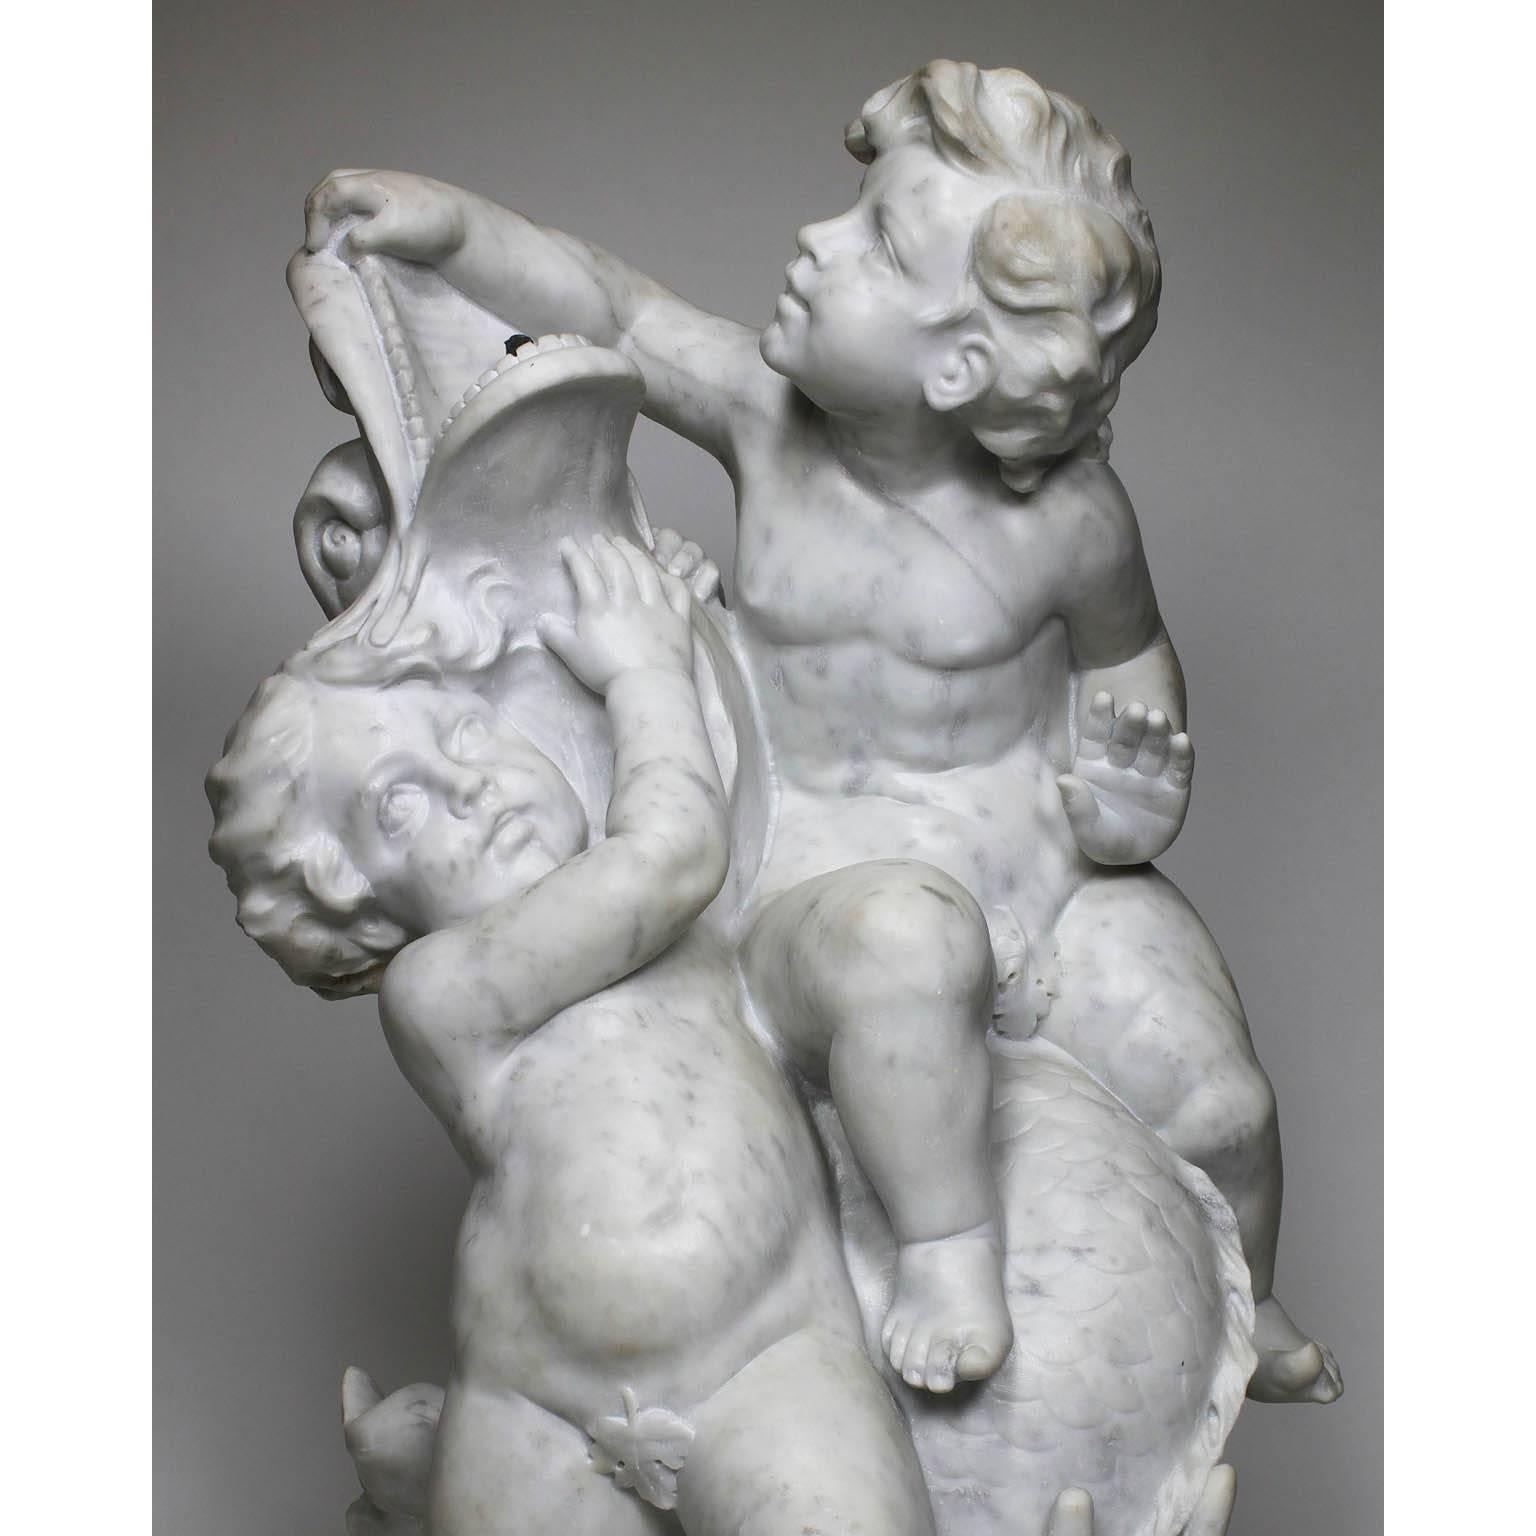 Belle et charmante sculpture de groupe fantaisiste en marbre blanc sculpté, datant du XIXe ou du XXe siècle, représentant deux putti (enfants) jouant avec un dauphin. Elle était destinée à être utilisée comme fontaine, Paris, vers 1900.

Mesures :